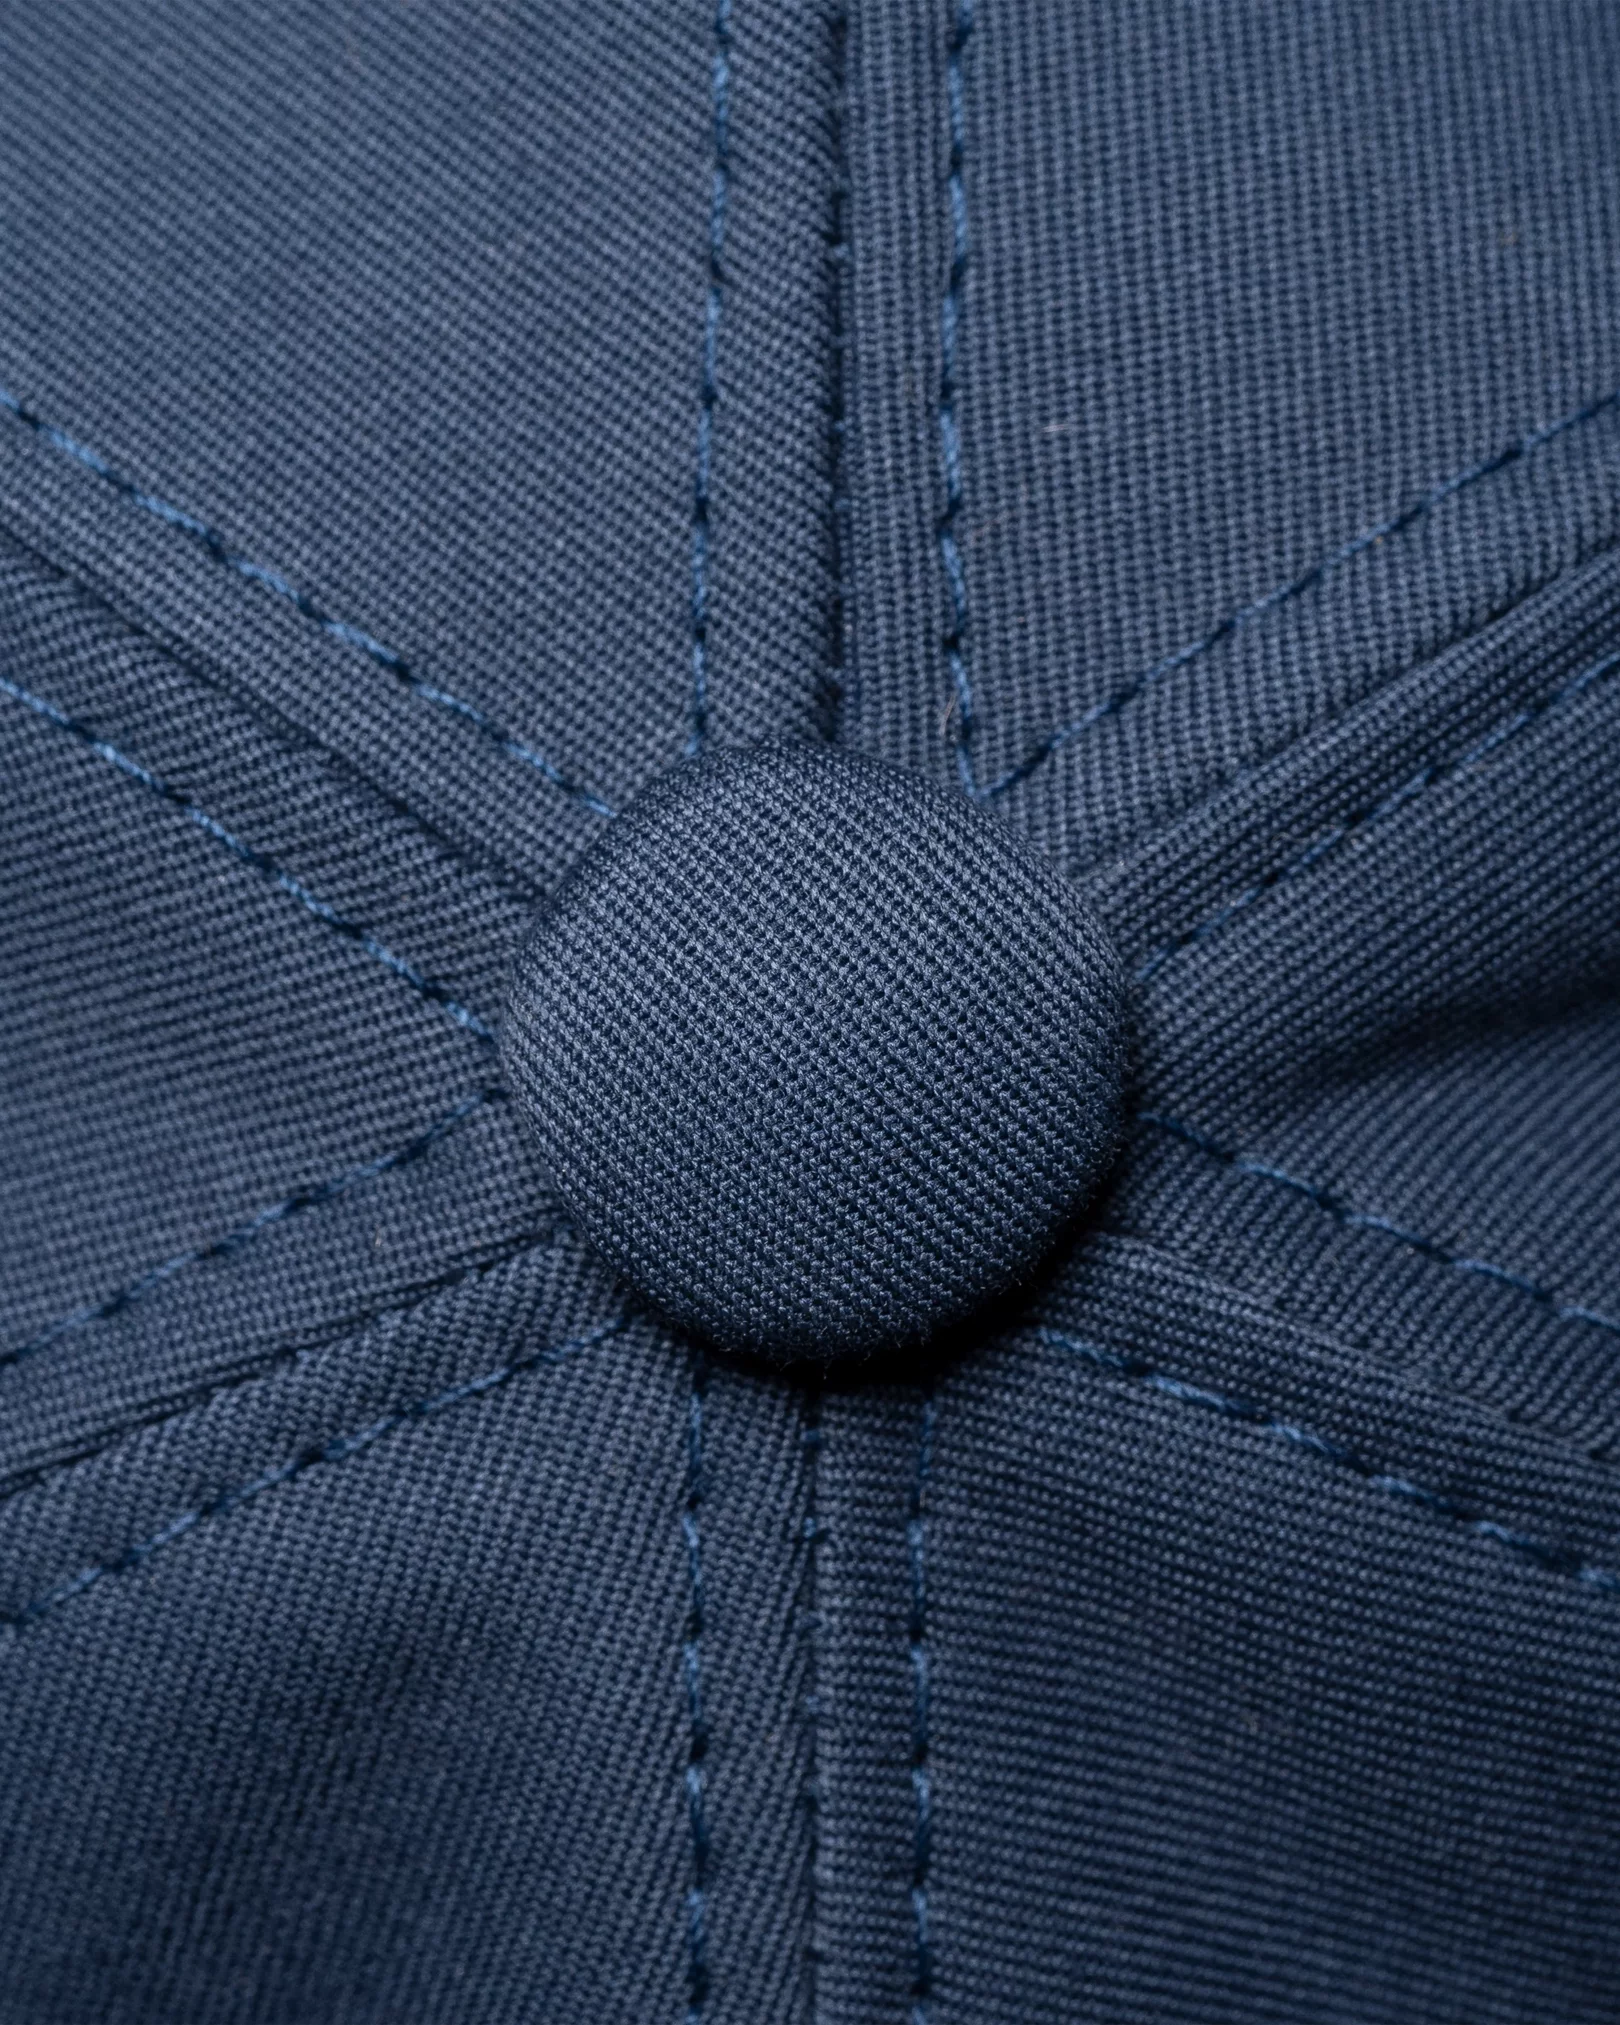 Navyblaue Cap aus Baumwolltwill